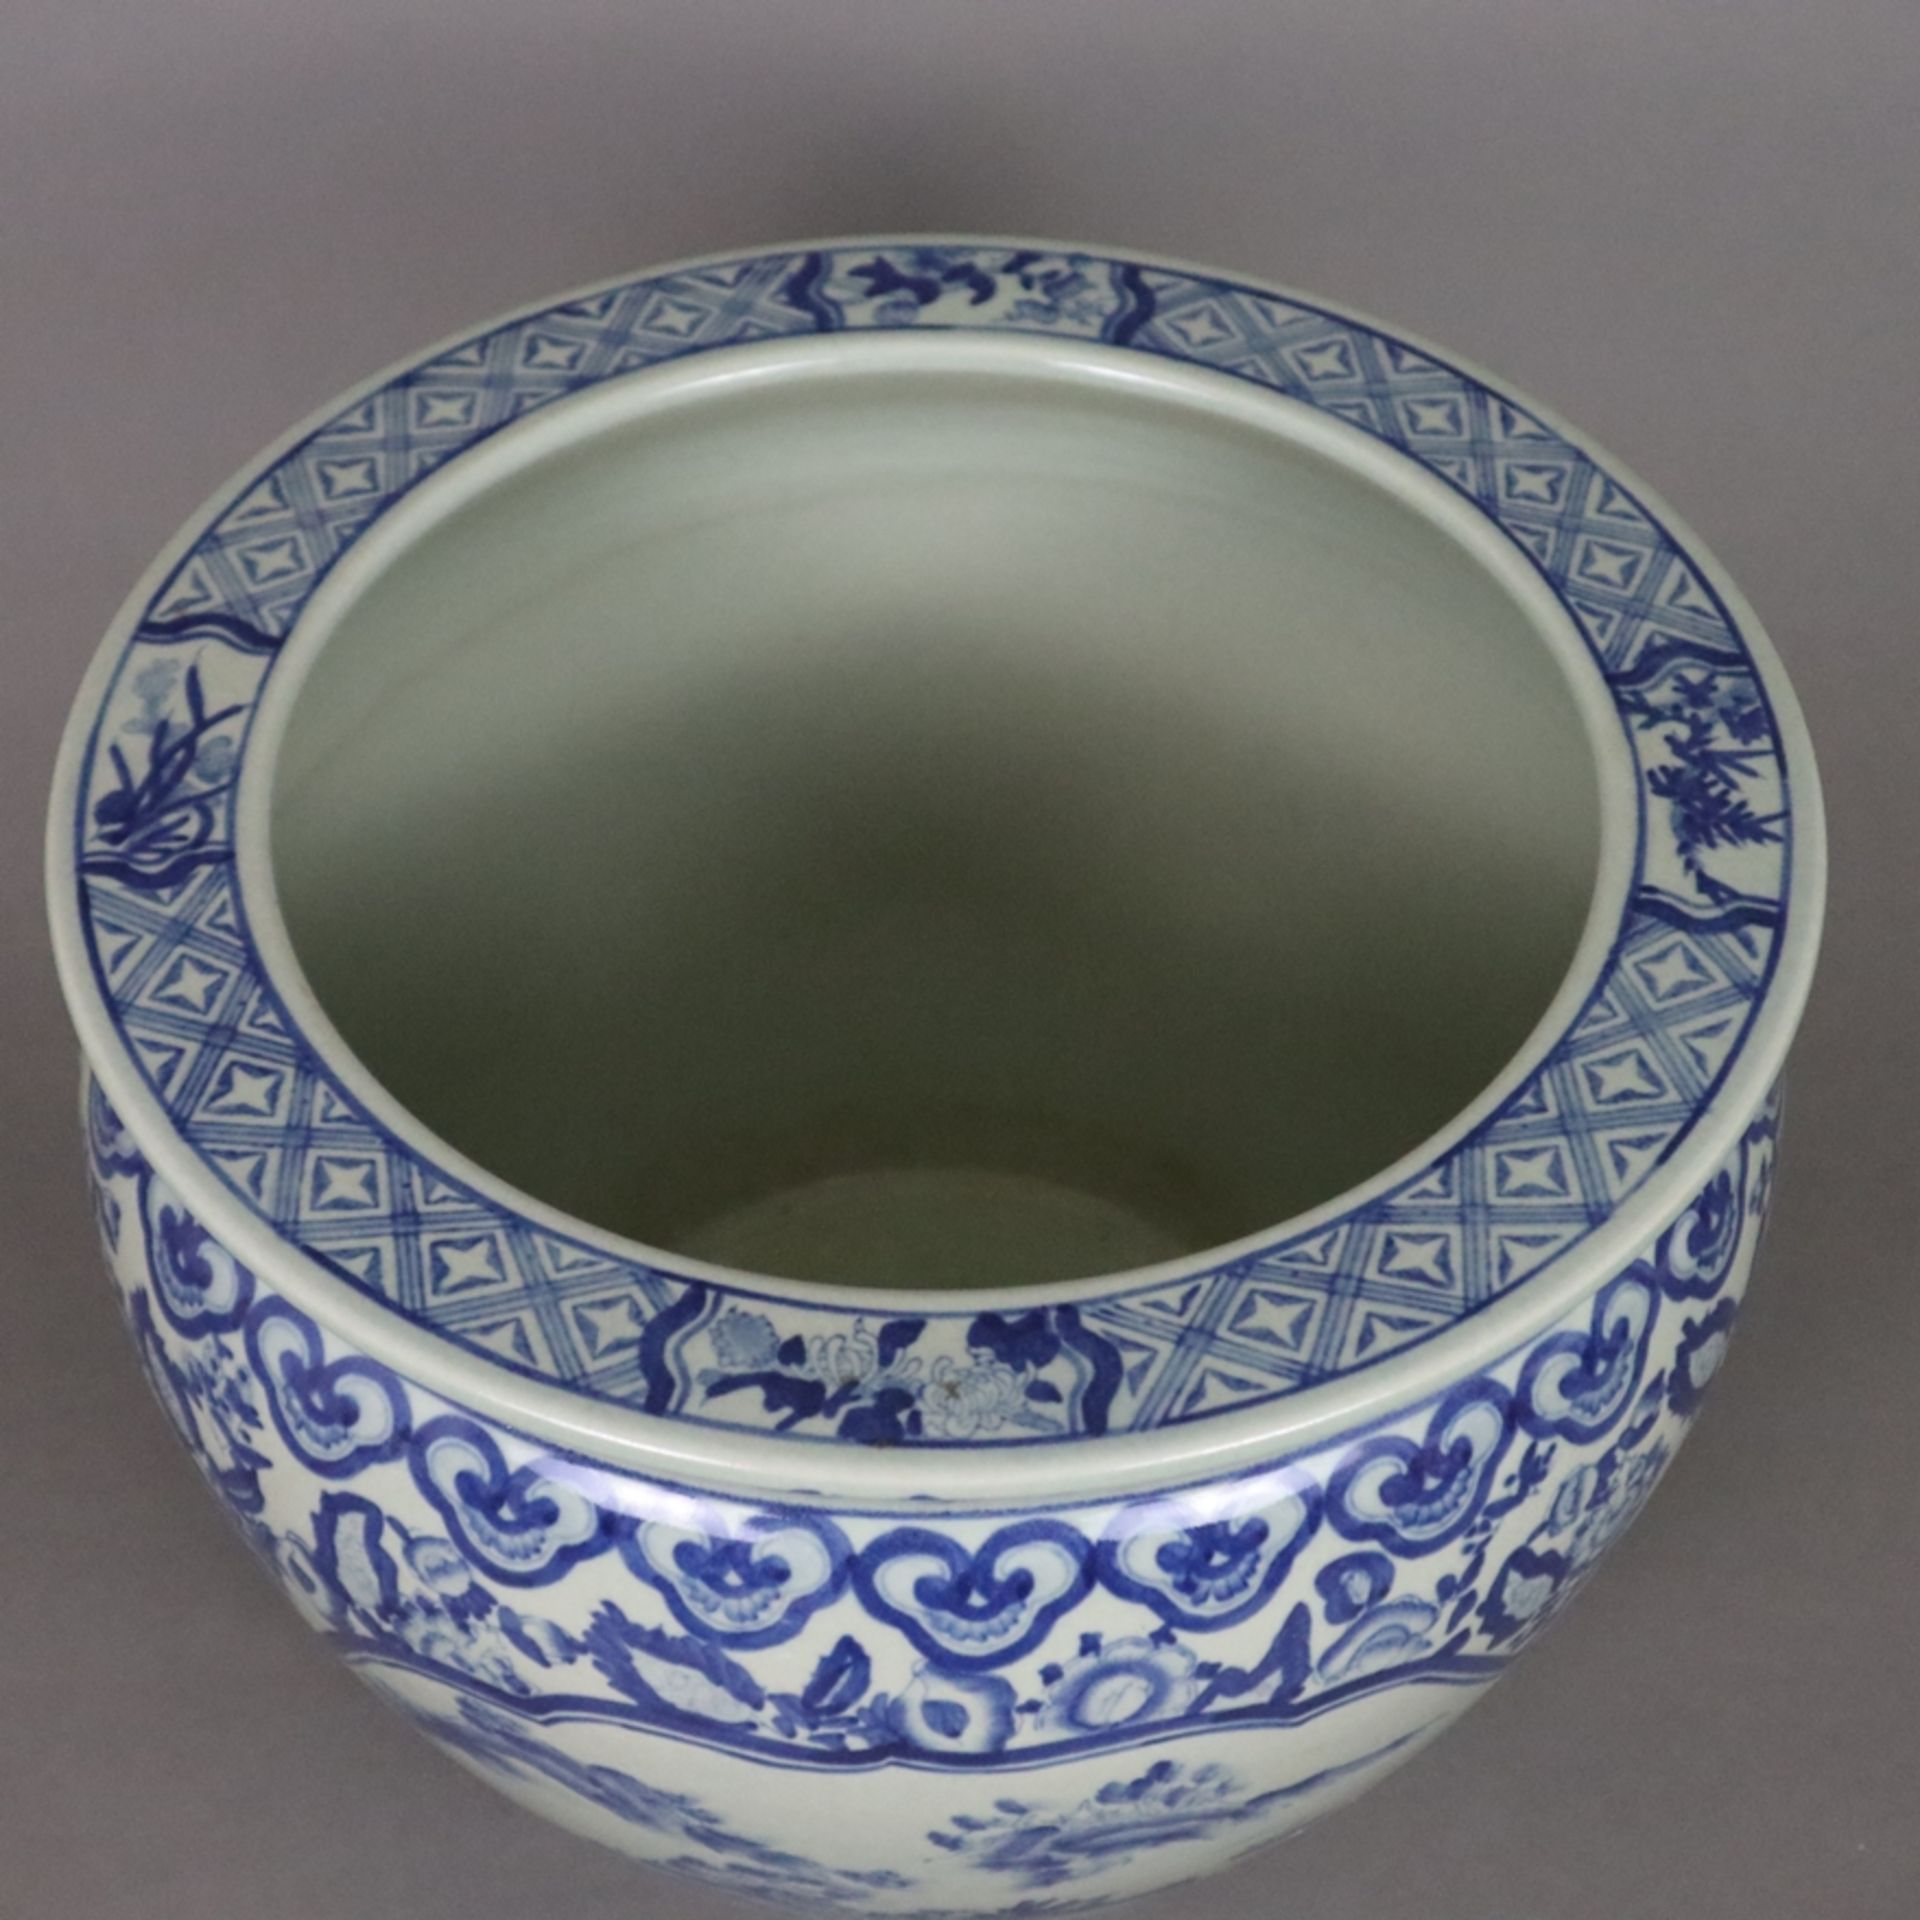 Blau-weißer Cachepot - China, 20. Jh., Porzellan, blau-weiß bemalt, bauchiger Korpus mit eingezogen - Bild 2 aus 9